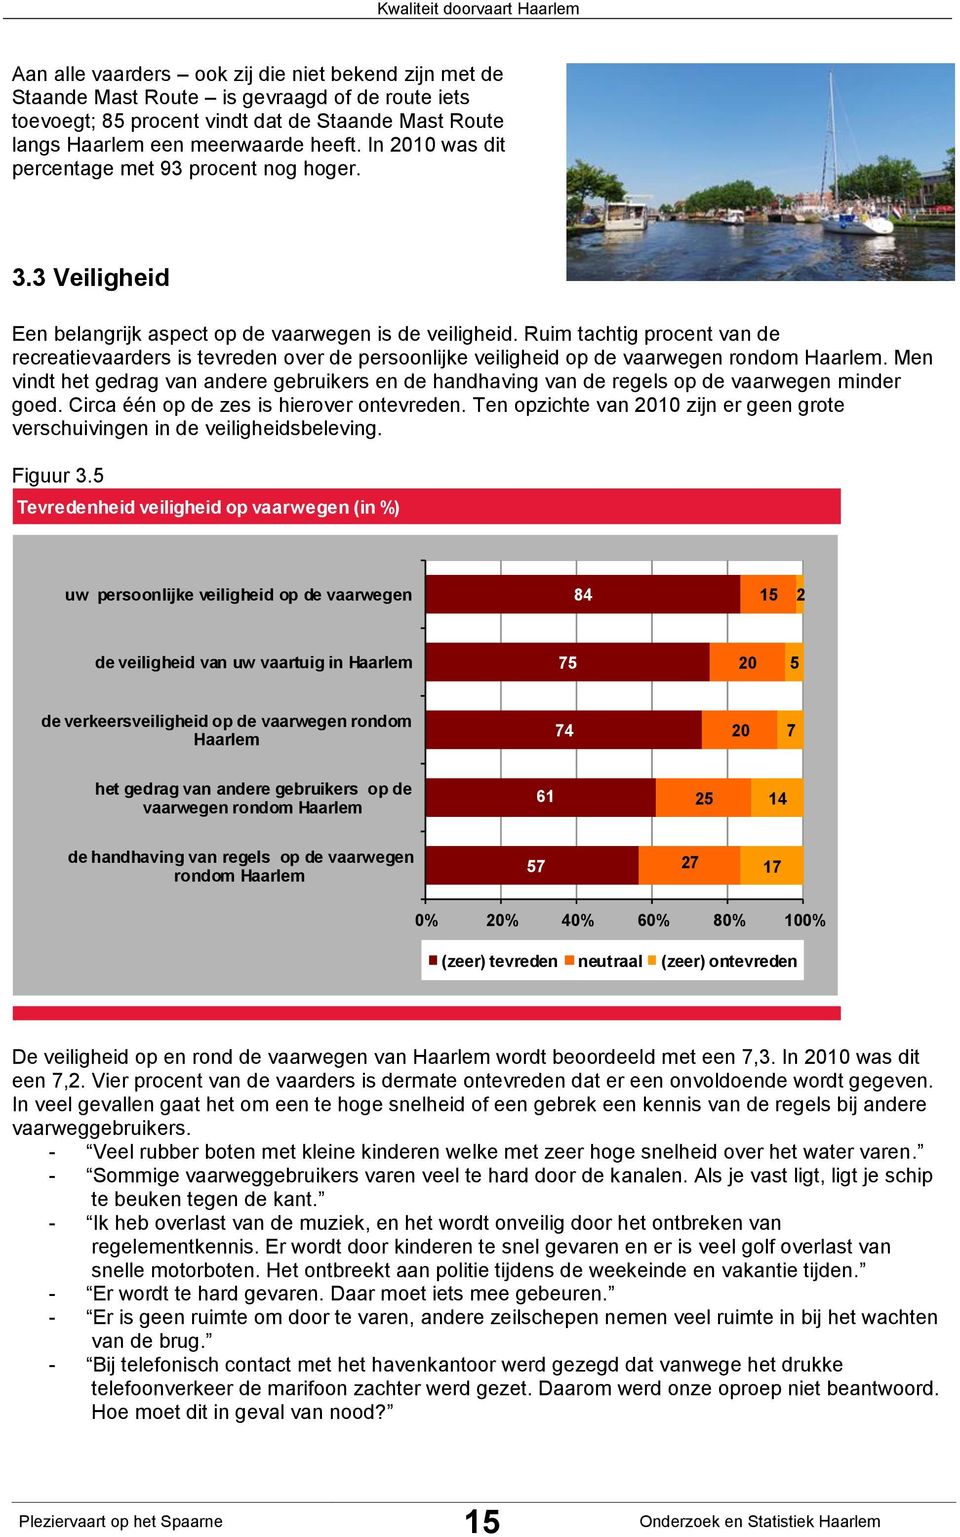 Ruim tachtig procent van de recreatievaarders is tevreden over de persoonlijke veiligheid op de vaarwegen rondom Haarlem.